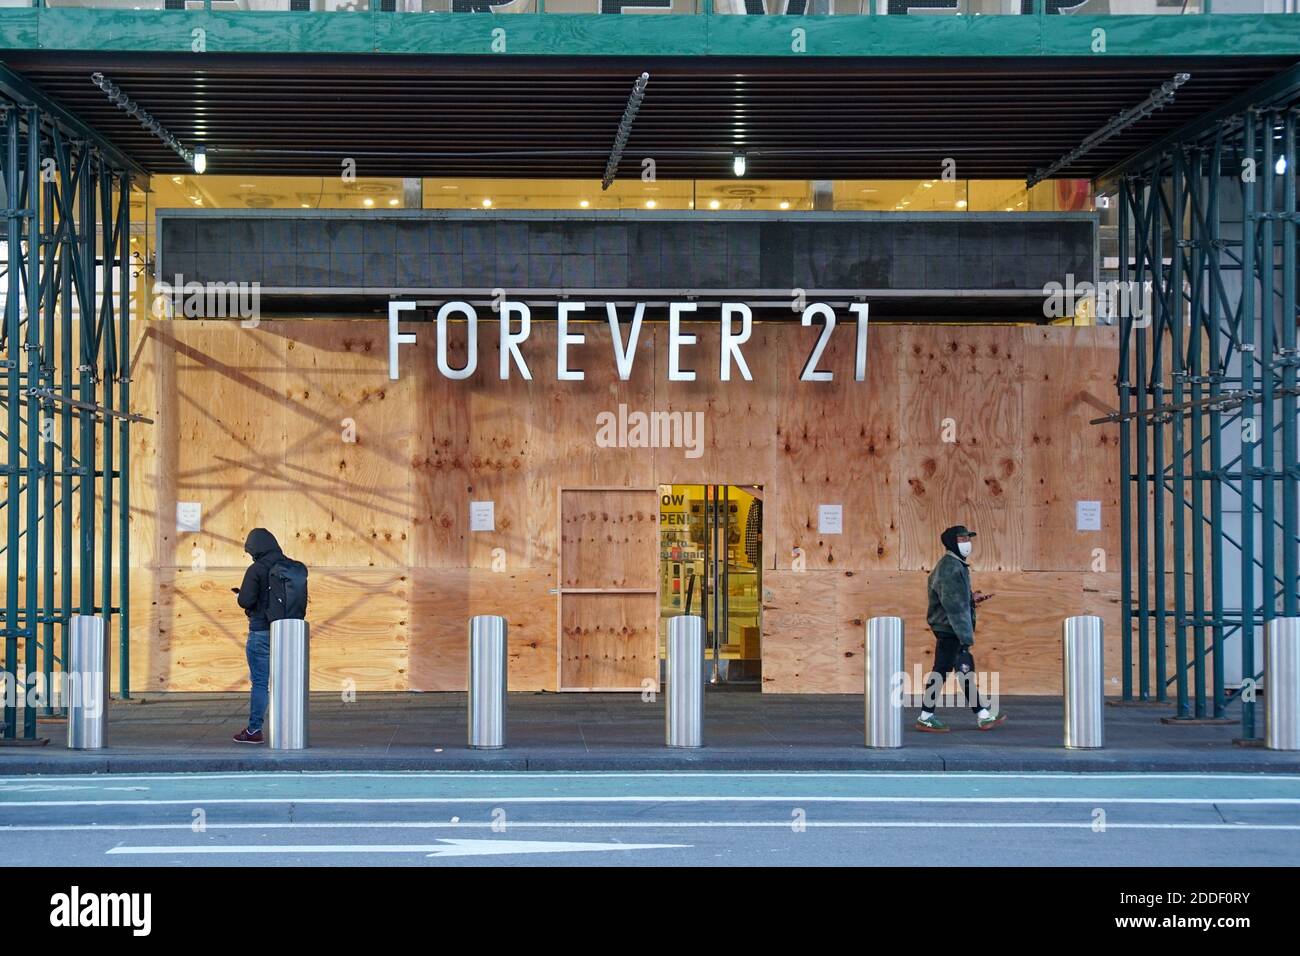 NEW YORK, NY - 2 NOVEMBRE : le magasin Forever 21 de Times Square est monté en avant en prévision du pillage en réponse aux résultats de l'élection présidentielle Banque D'Images